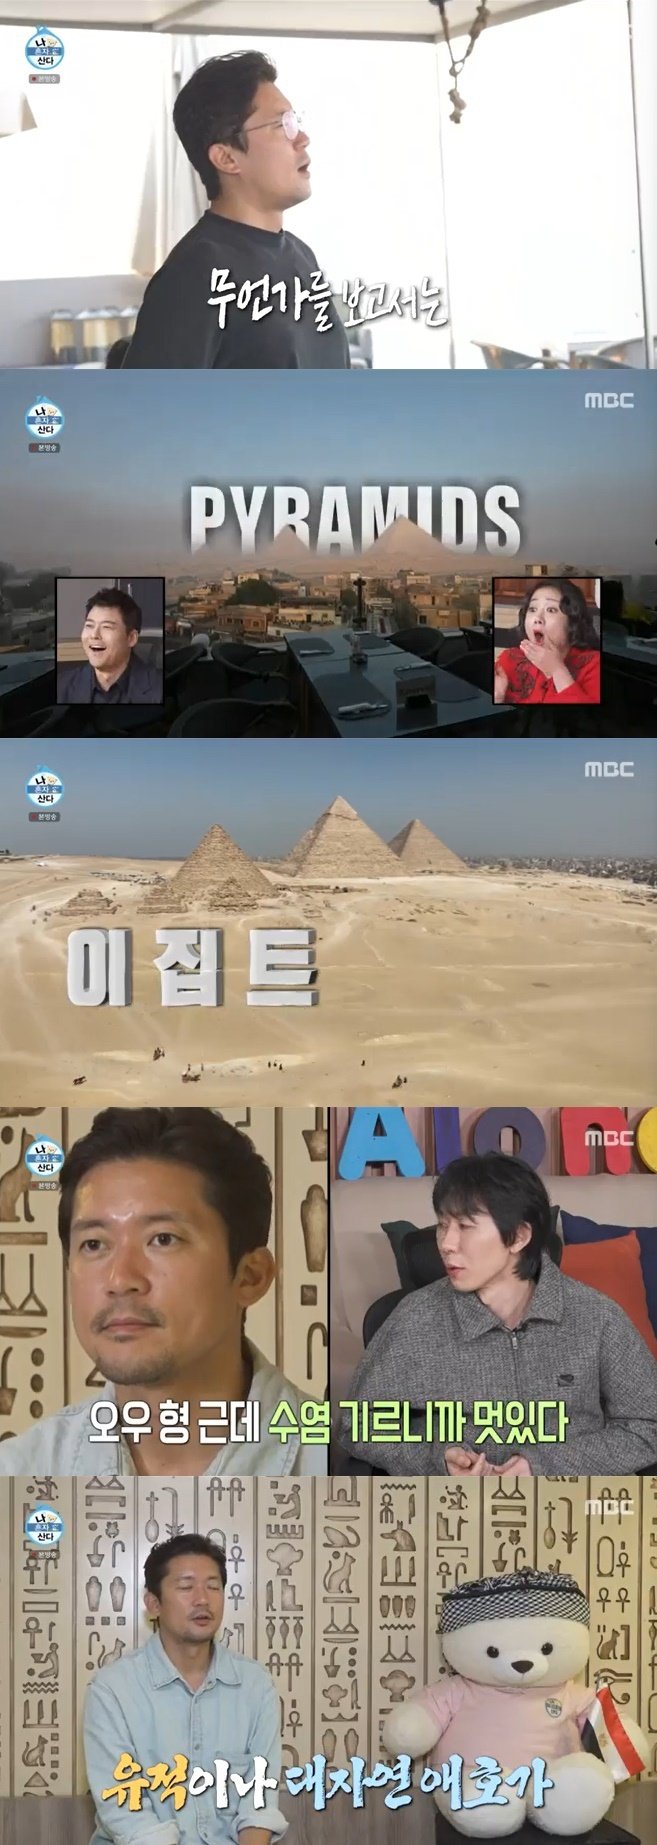 김대호, 10년차 휴가 이집트 갔다…피라미드 실물 영접에 눈물날 뻔